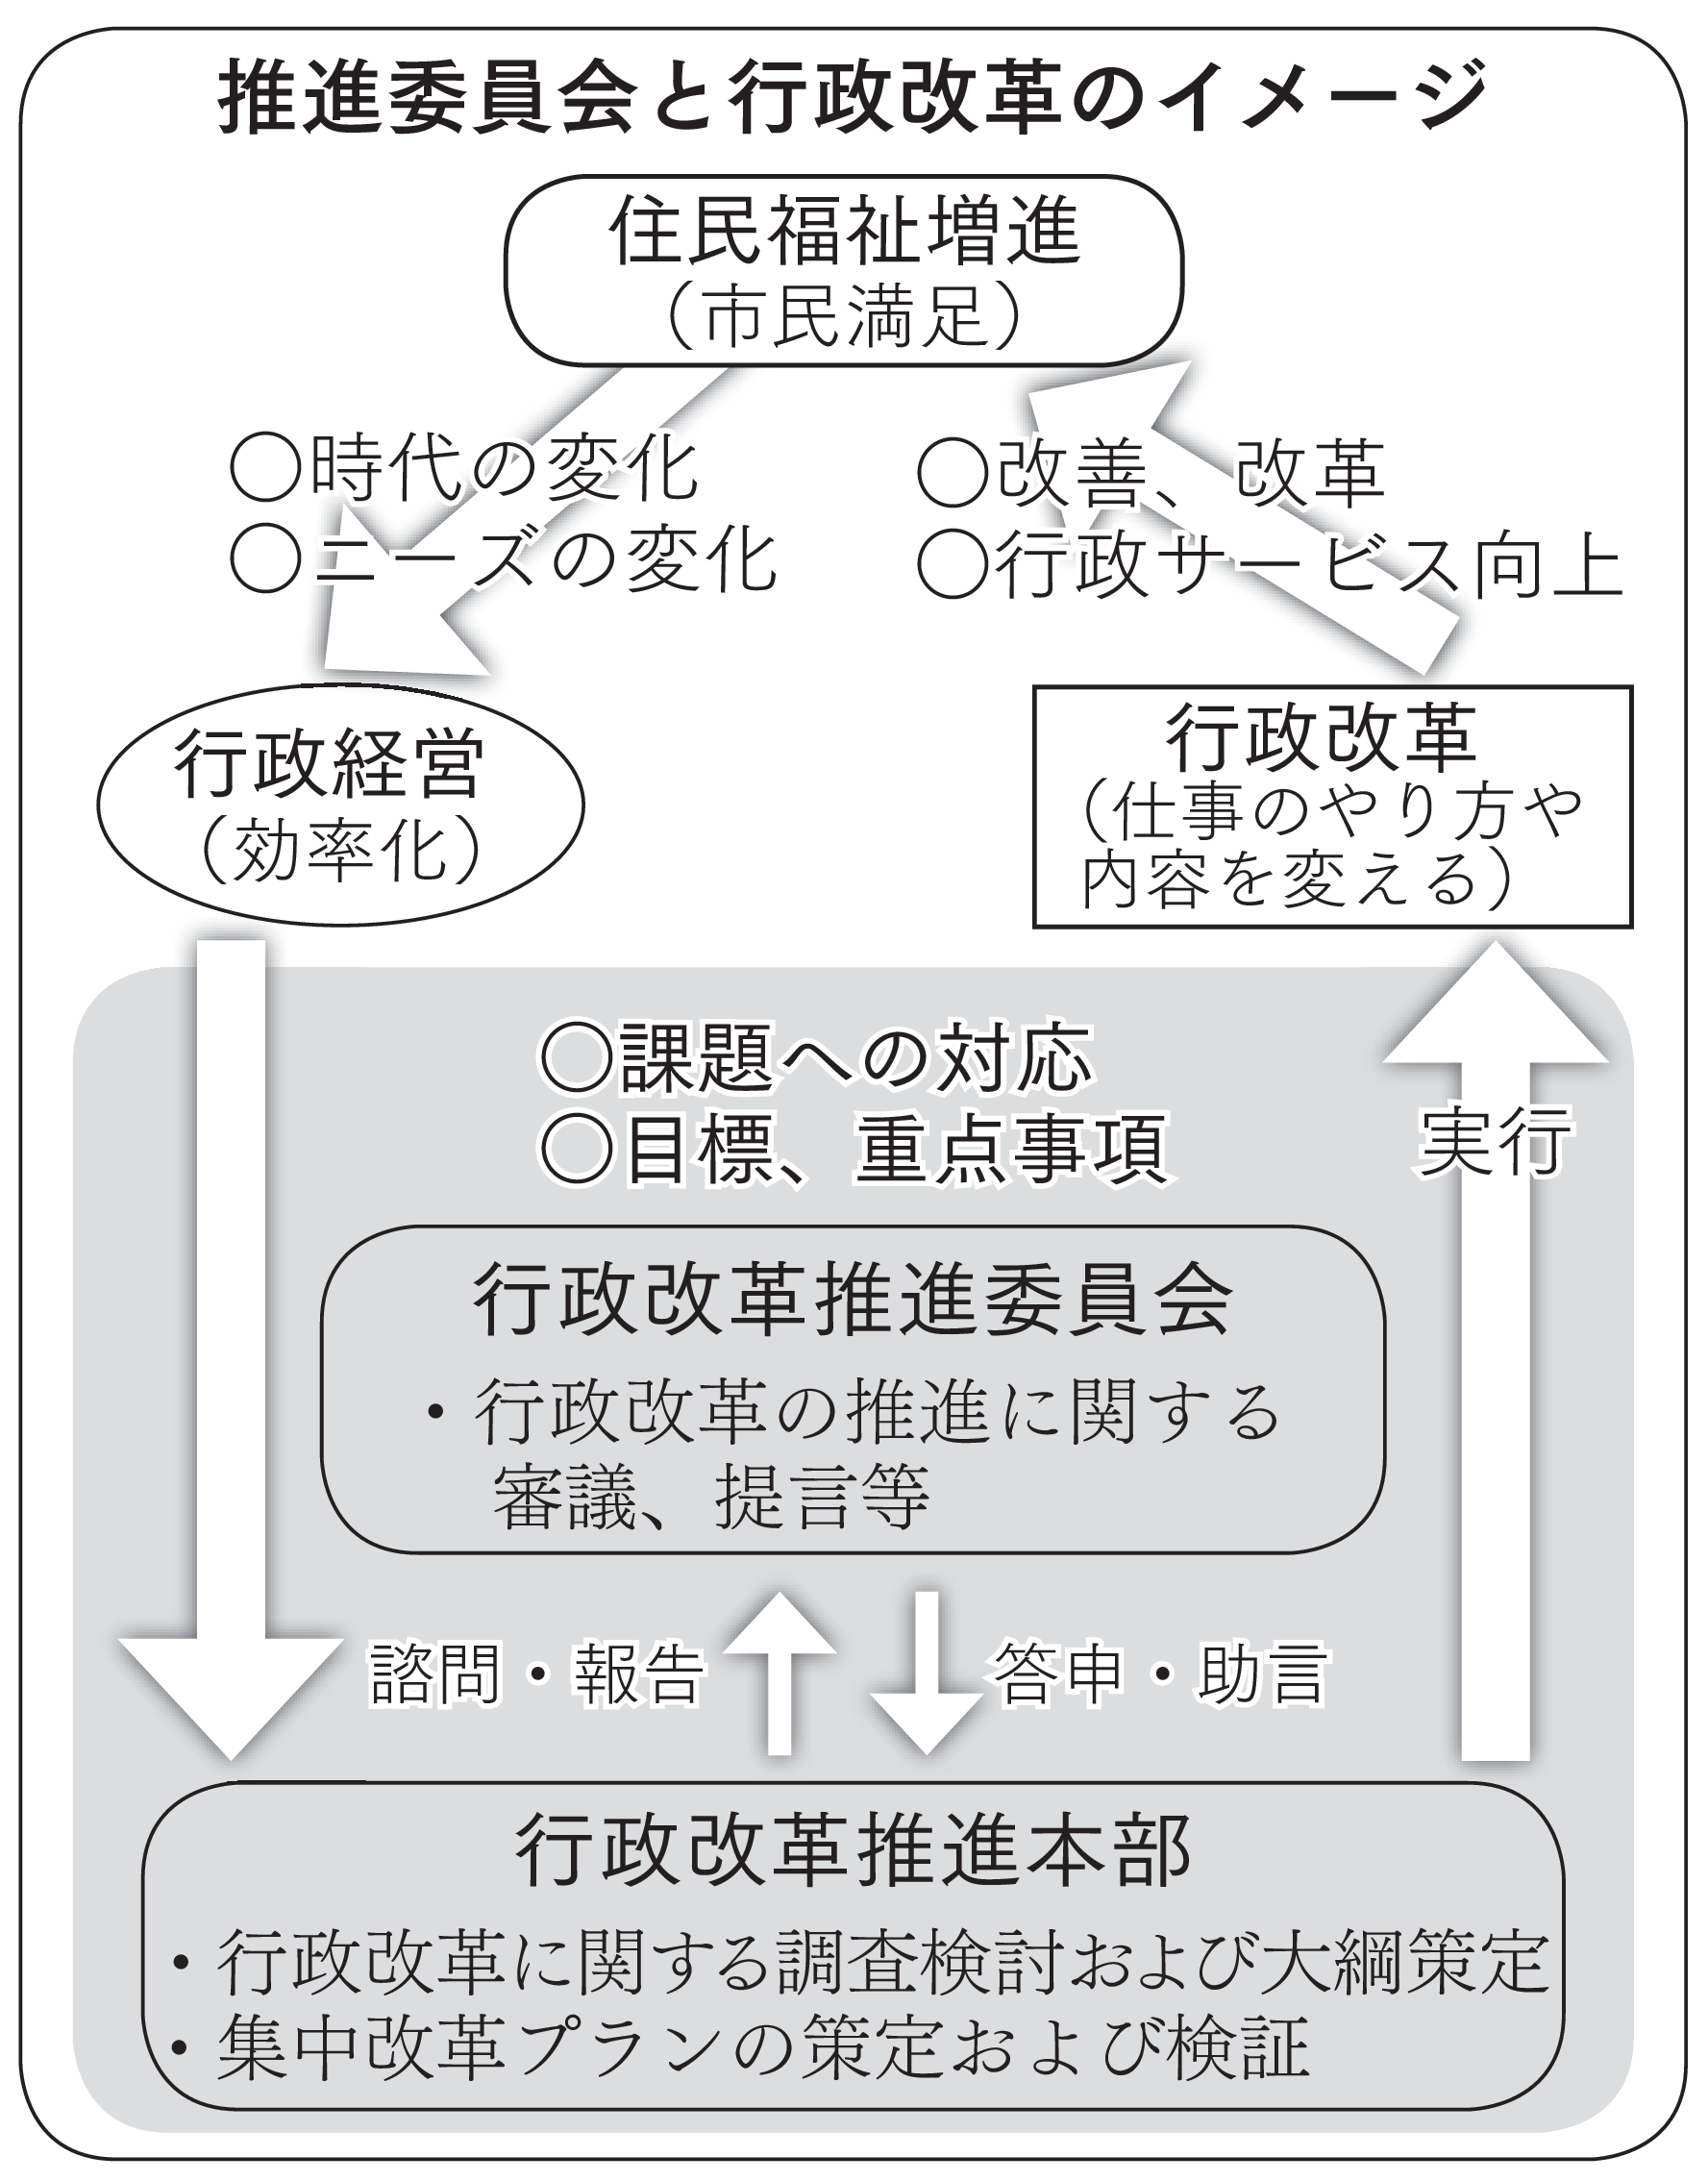 推進委員会と行政改革のイメージ図